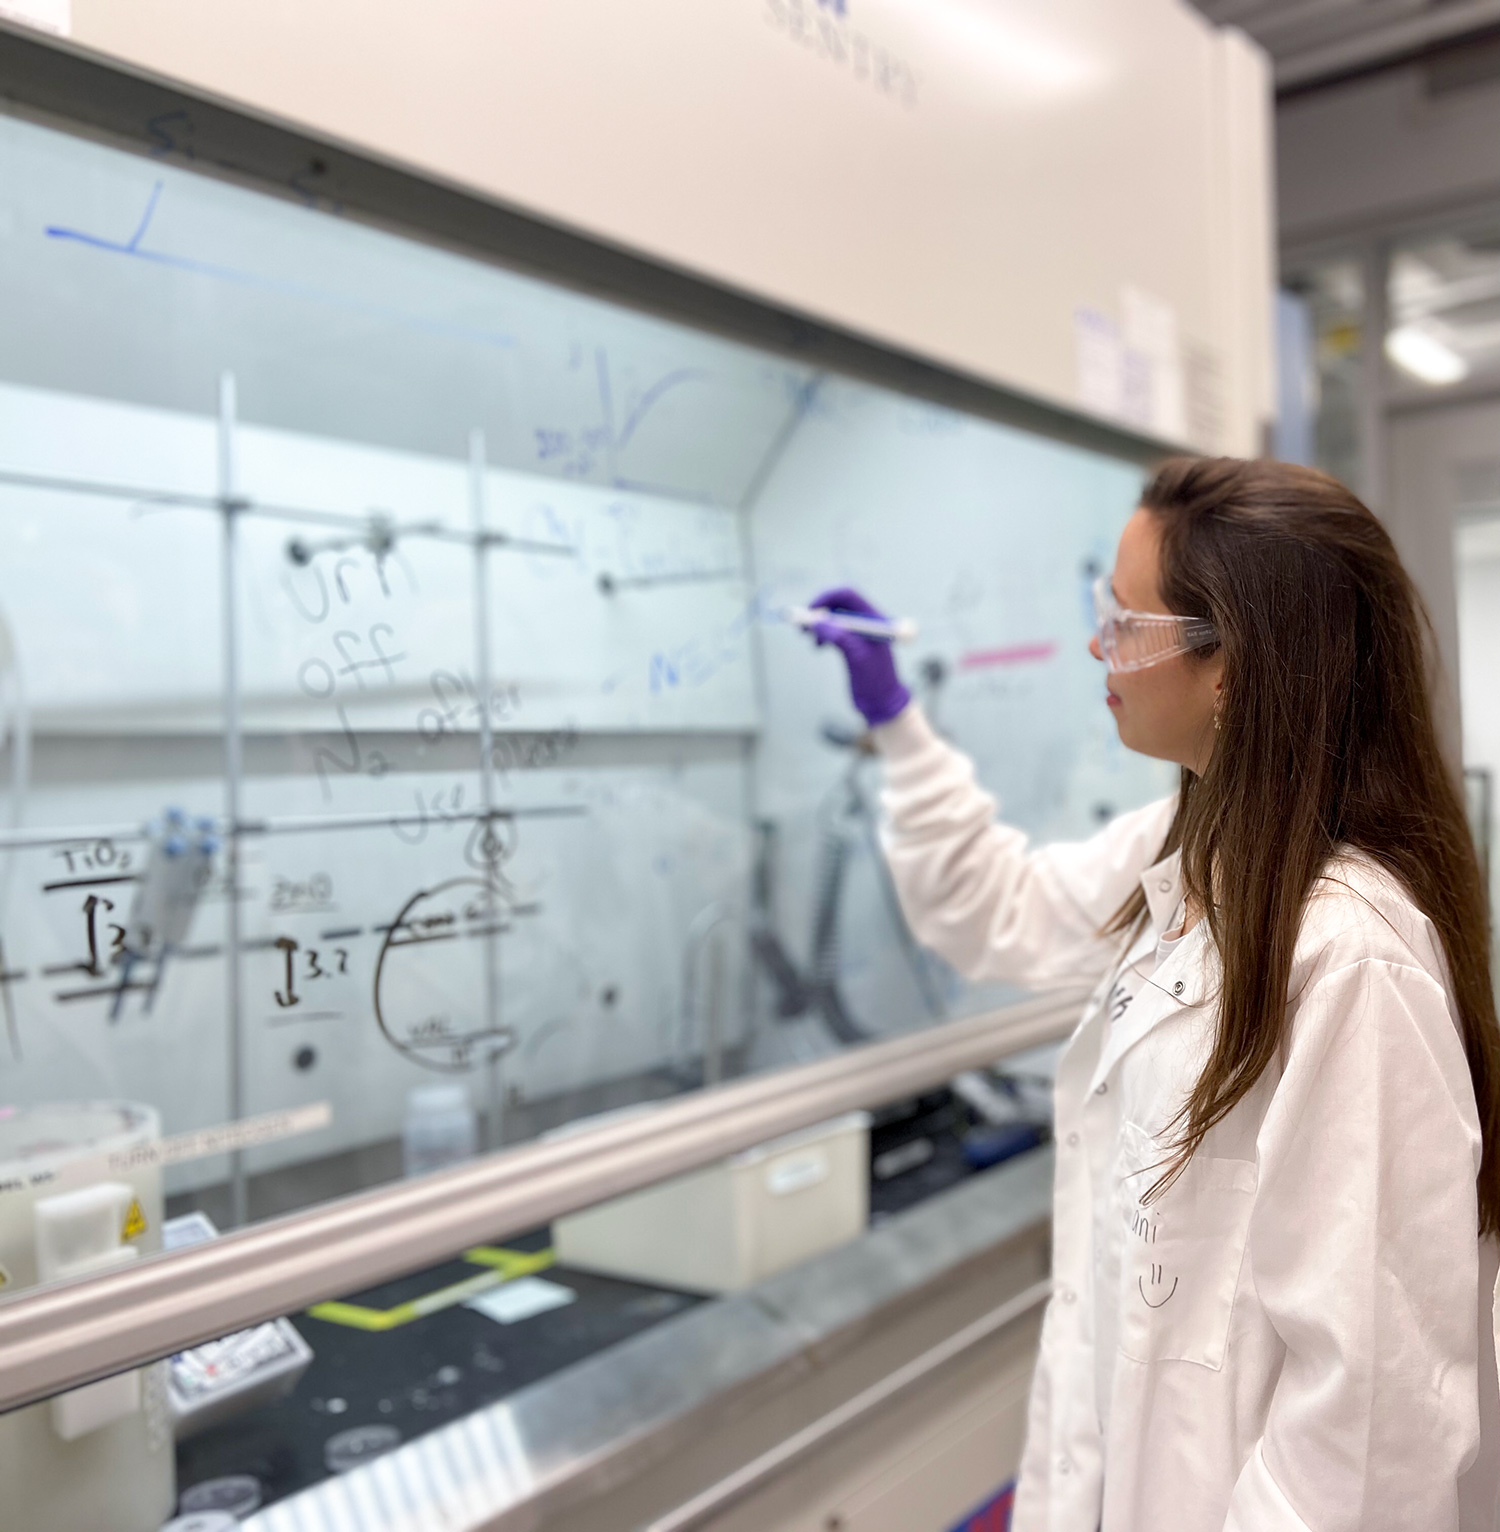 La ingeniera química Daniela Blanco escribe atentamente ecuaciones químicas en una ventana de vidrio dentro de un laboratorio de química. Lleva el atuendo tradicional de laboratorio: bata blanca, gafas de seguridad y guantes de plástico.